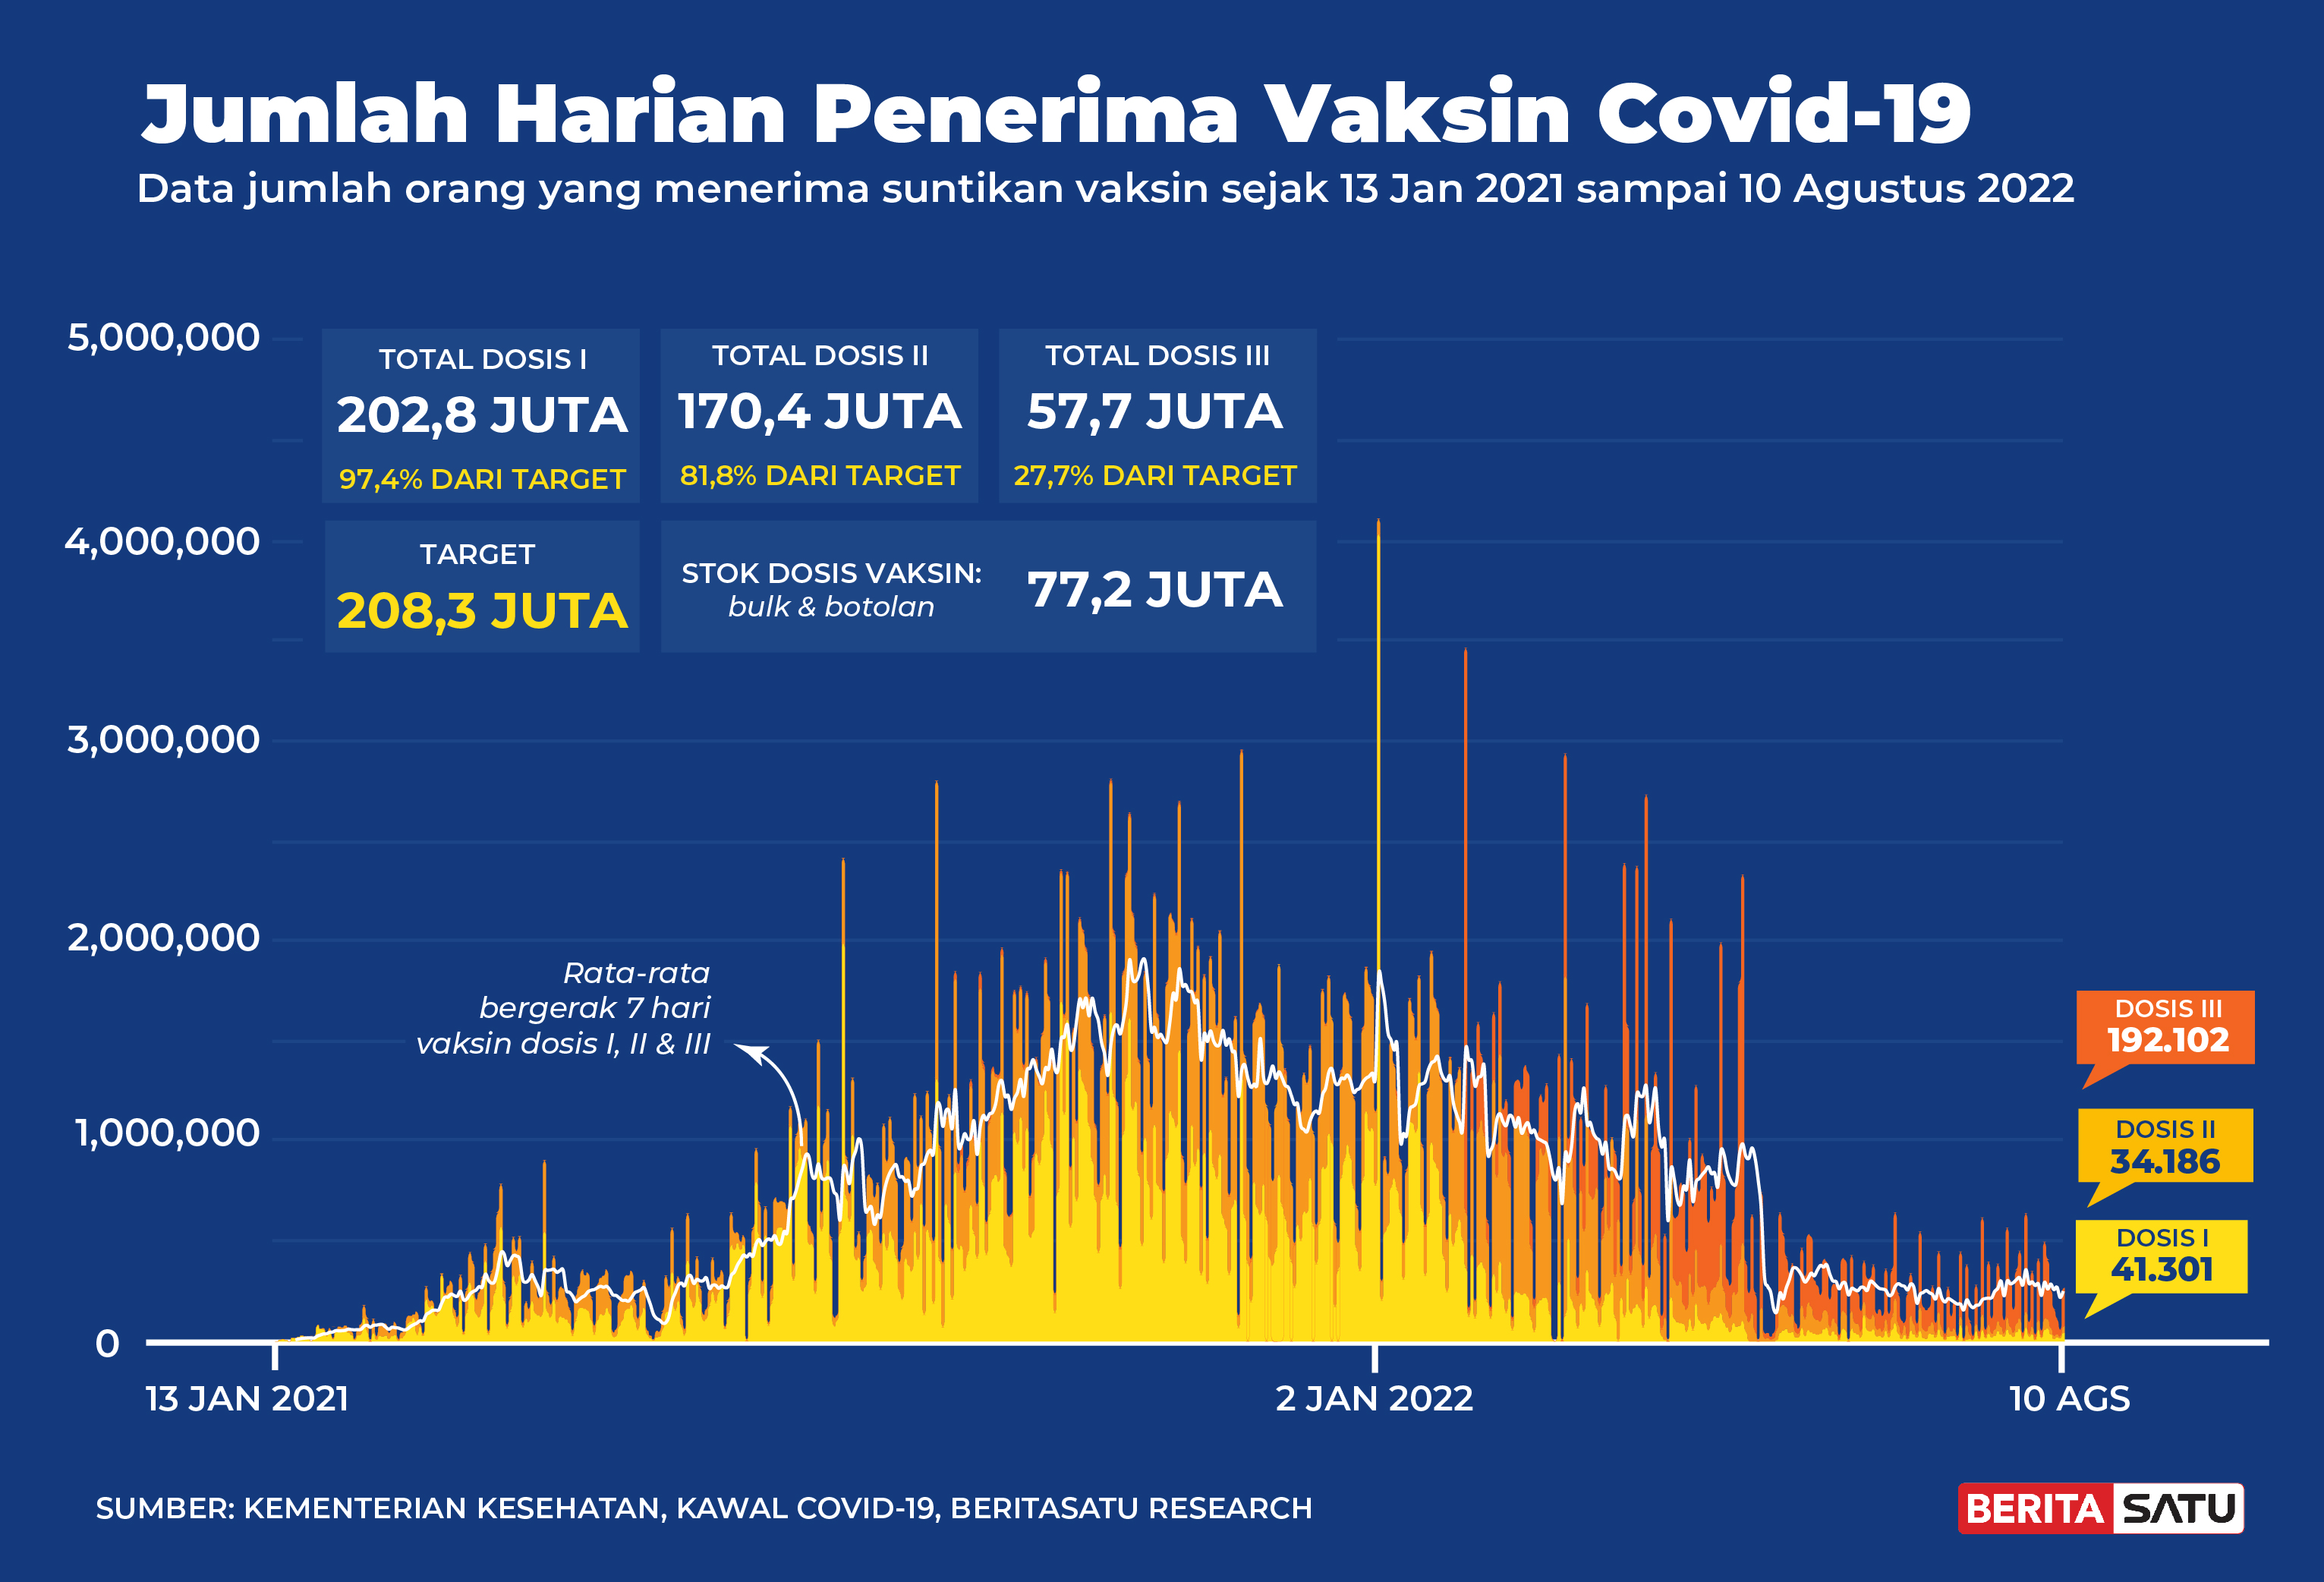 Penerima Vaksin Covid-19 di Indonesia sampai 10 Agustus 2022